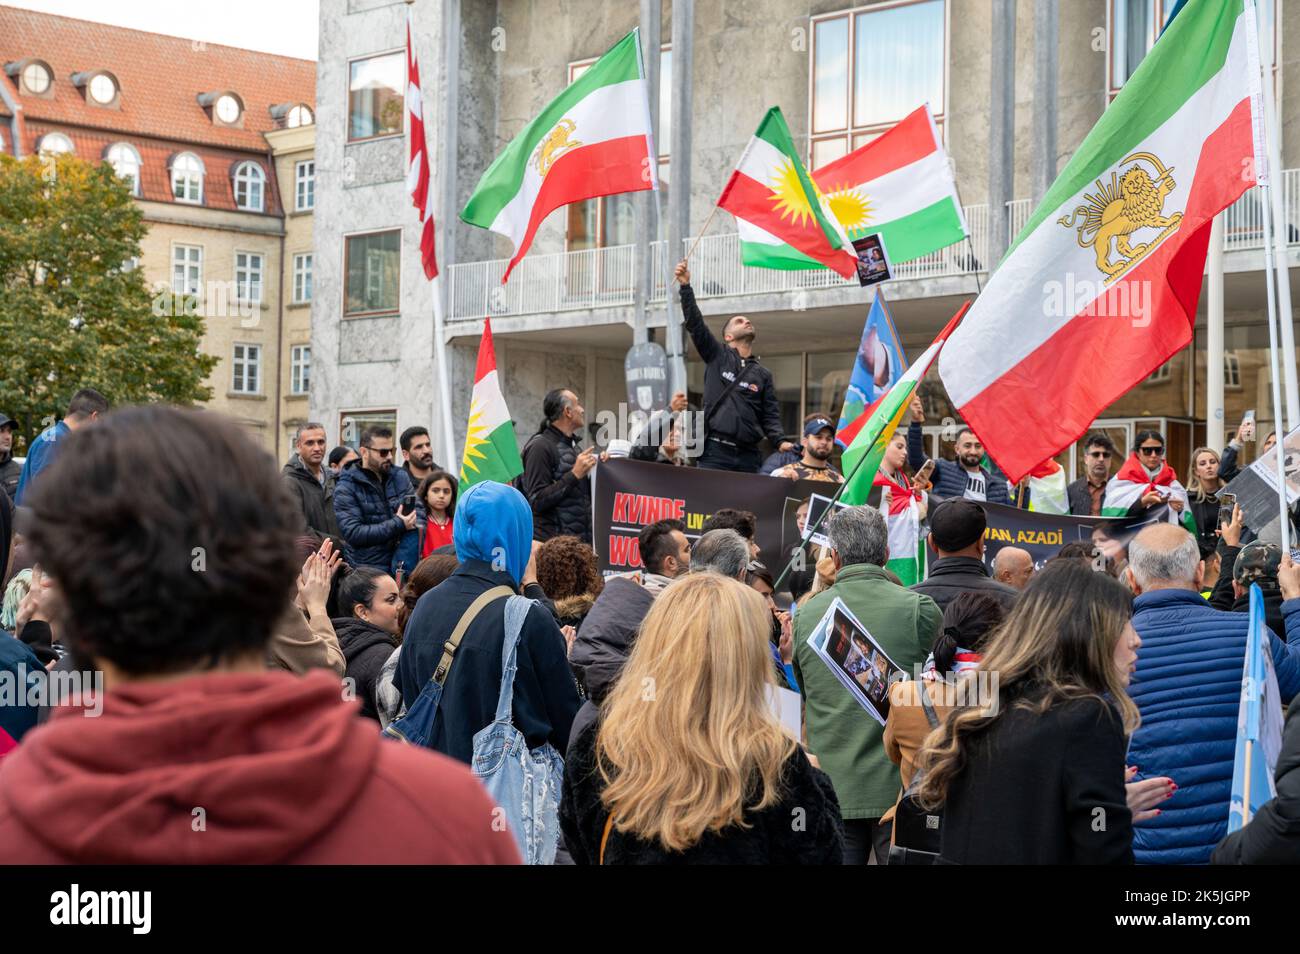 Manifestation de soutien aux femmes, à la vie et à la liberté après la mort de la femme iranienne Mahsa Amini, à Aarhus (Danemark), le 8 octobre 2022 Banque D'Images